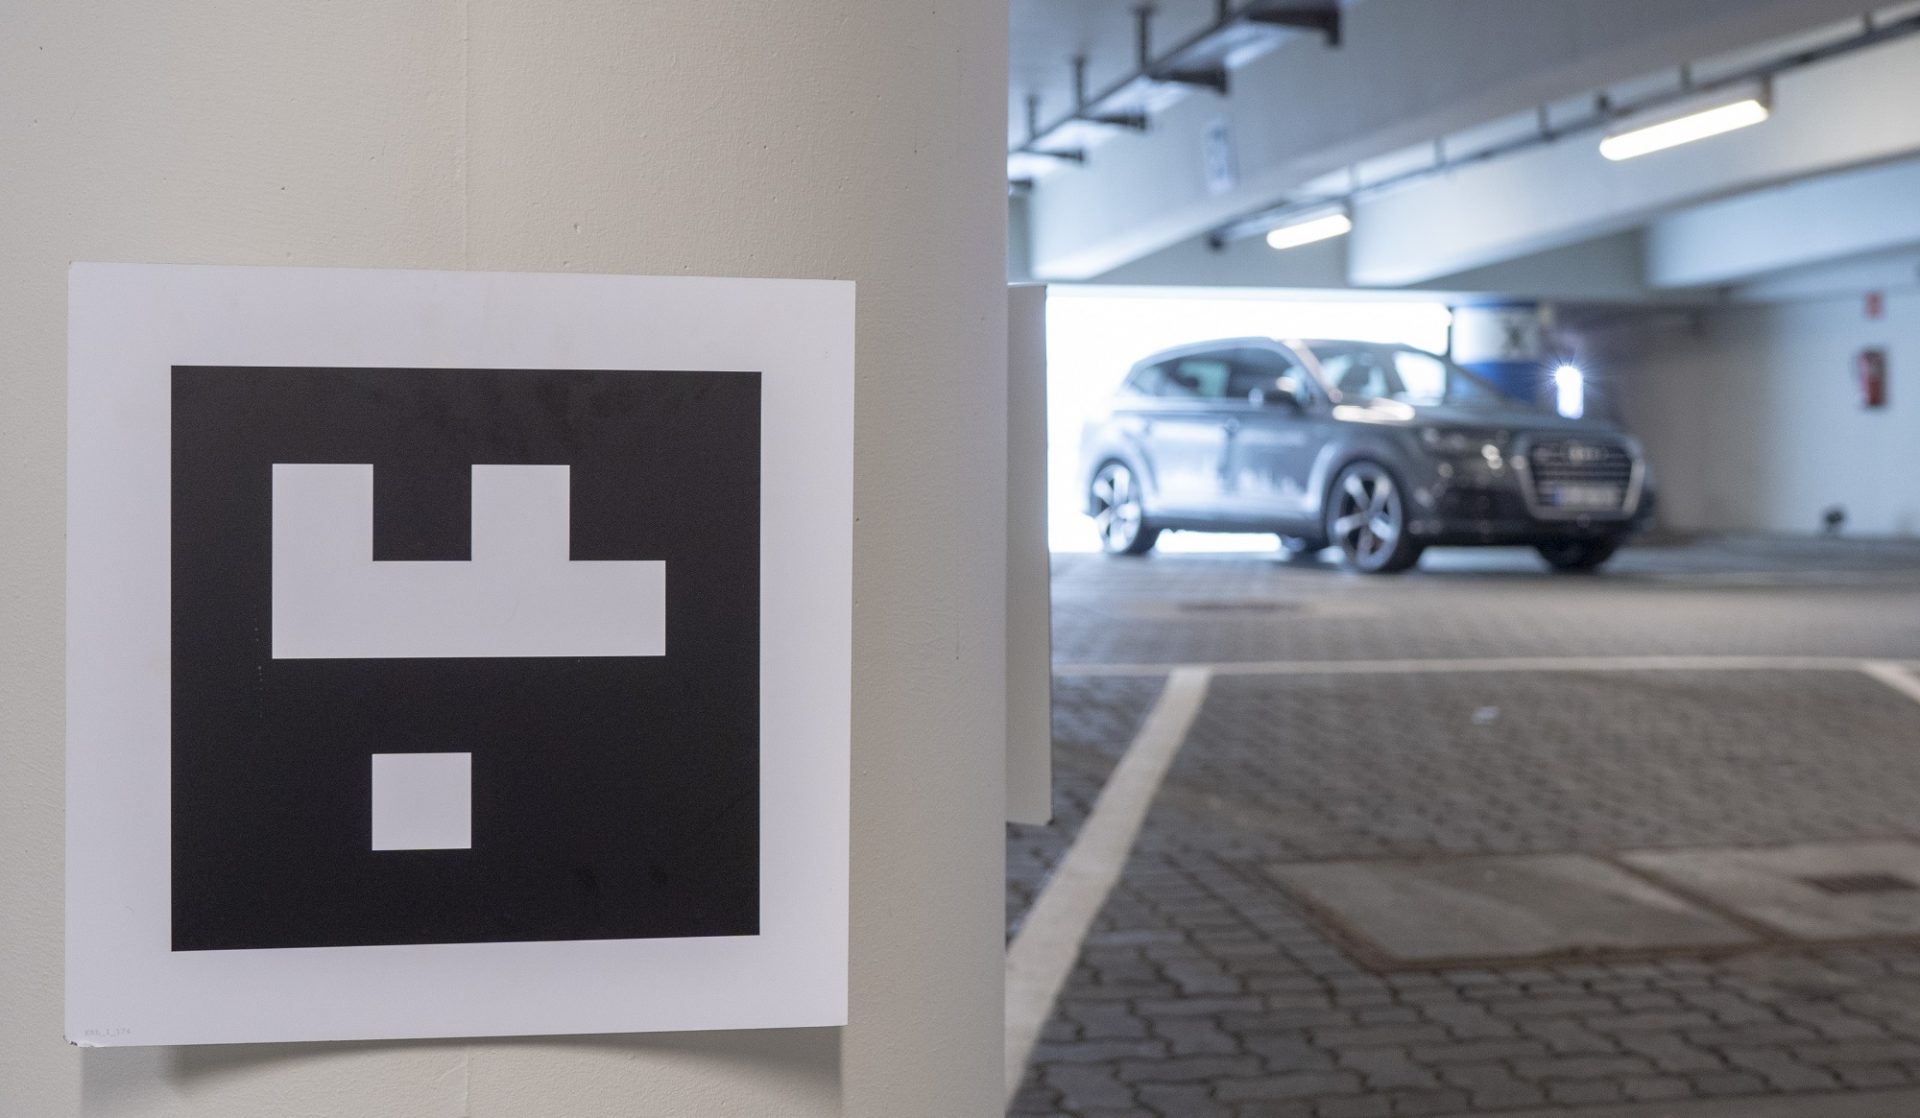 Test del parcheggio autonomo. Con gli indicatori visivi applicati nell'aeroporto di Amburgo i veicoli test trovano un posteggio libero